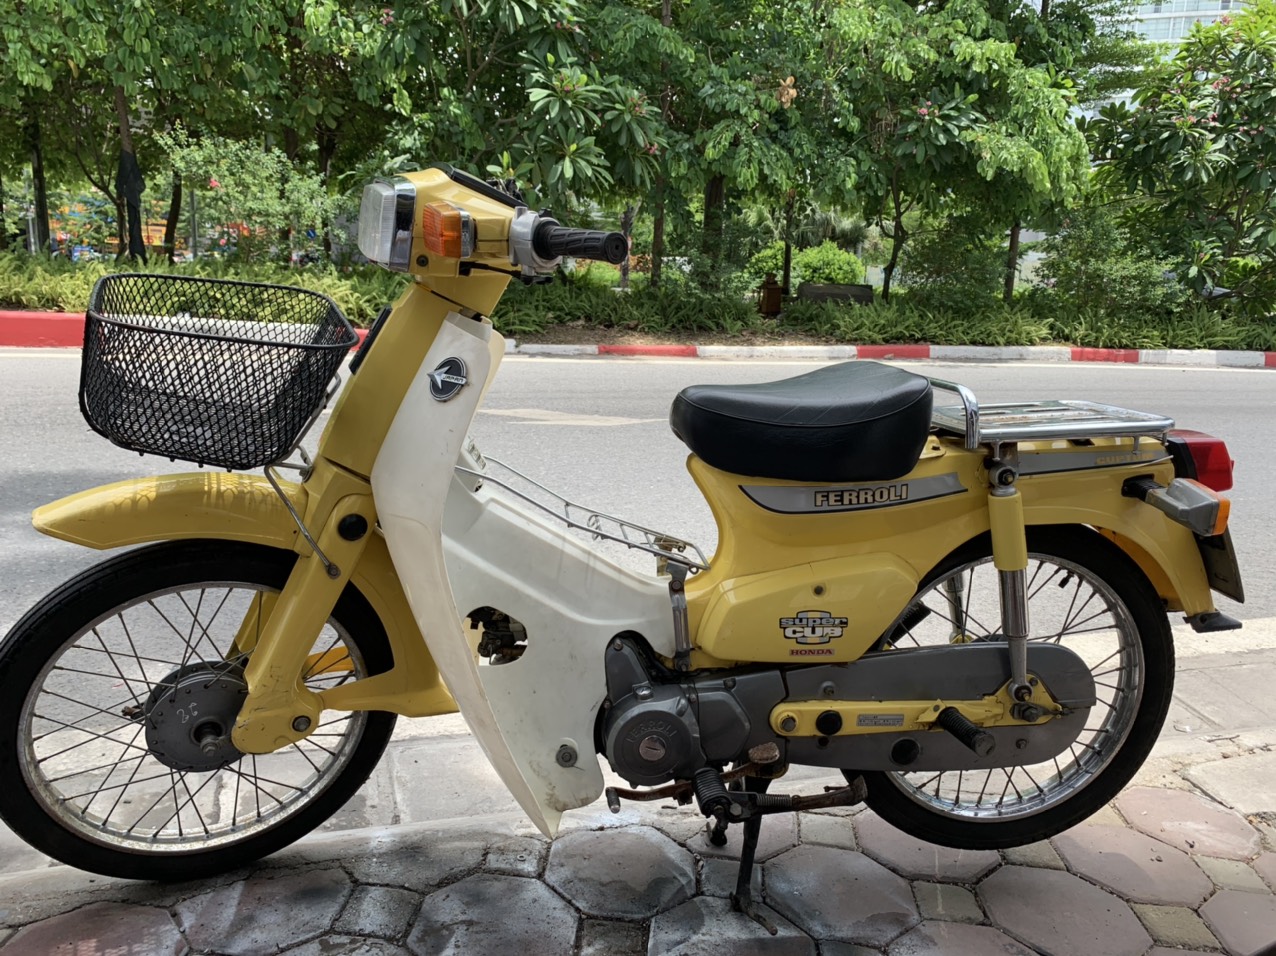 Sau thời xe đạp điện, xe máy điện, giới trẻ có “phong trào” sắm xe Scoopy